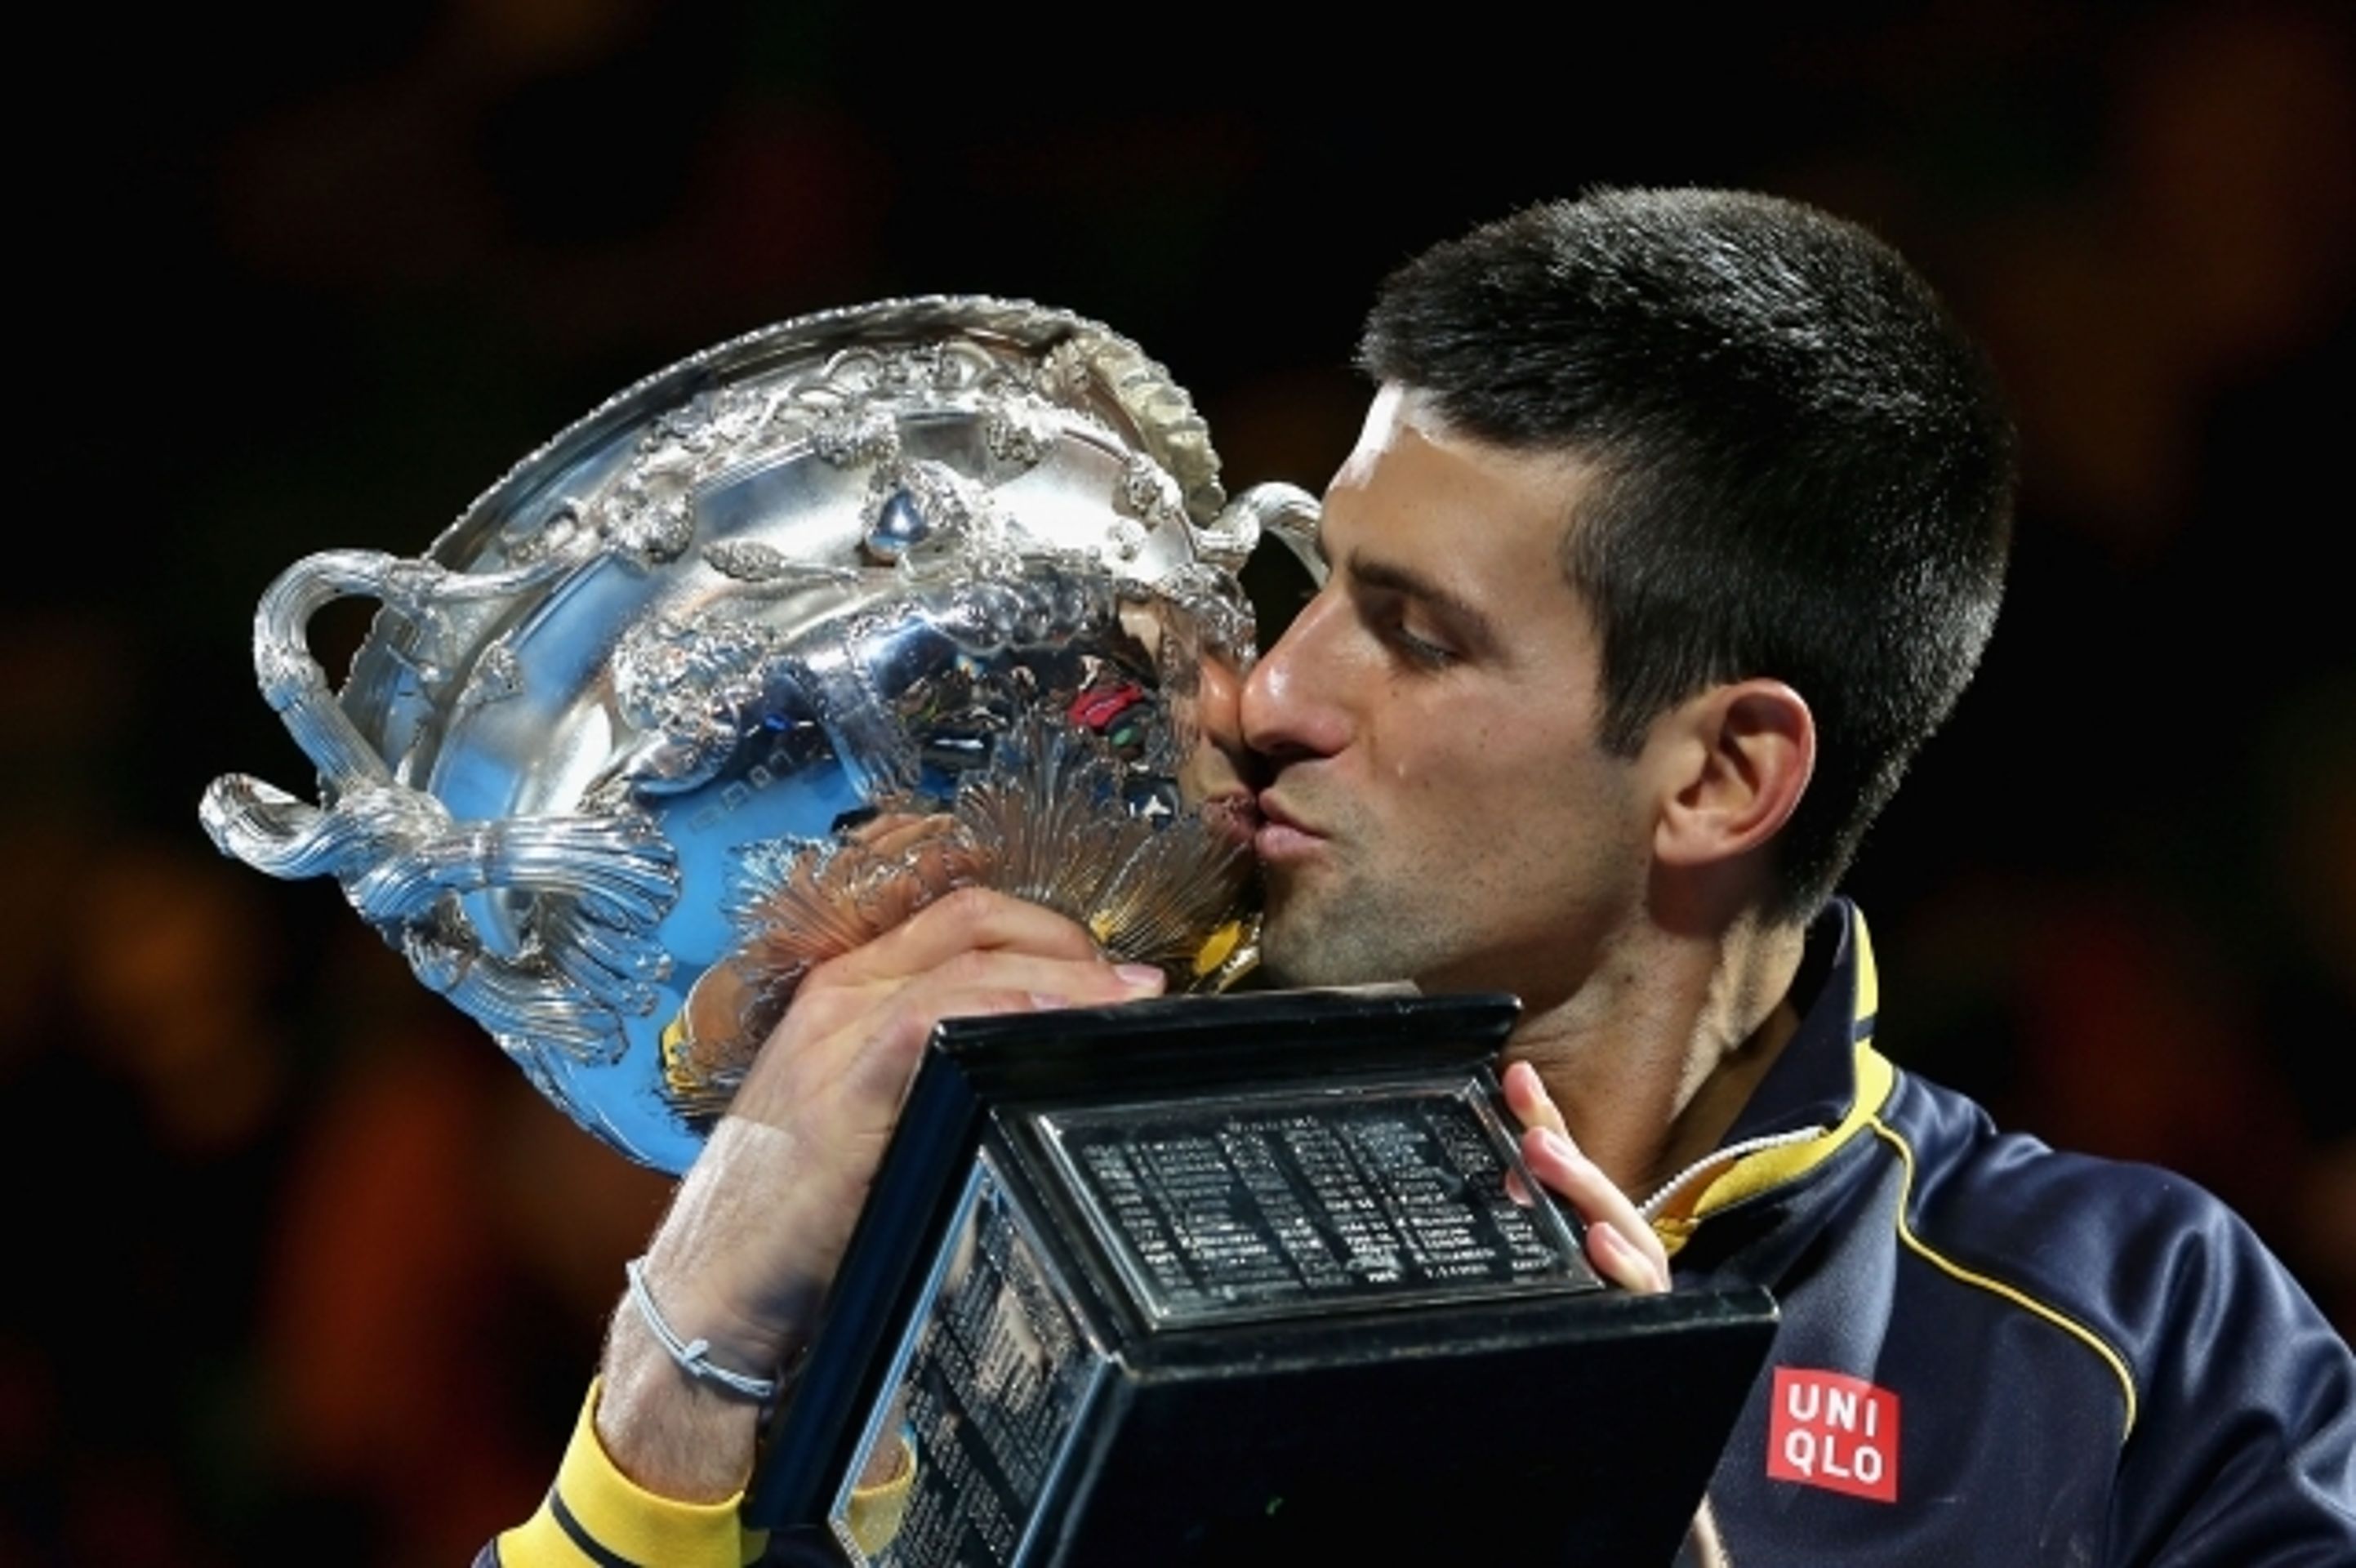 Novak Djokovič vyhrál potřetí v řadě Australian Open - 2 - GALERIE: Djokovič potřetí v řadě triumfuje na Australian Open (1/9)